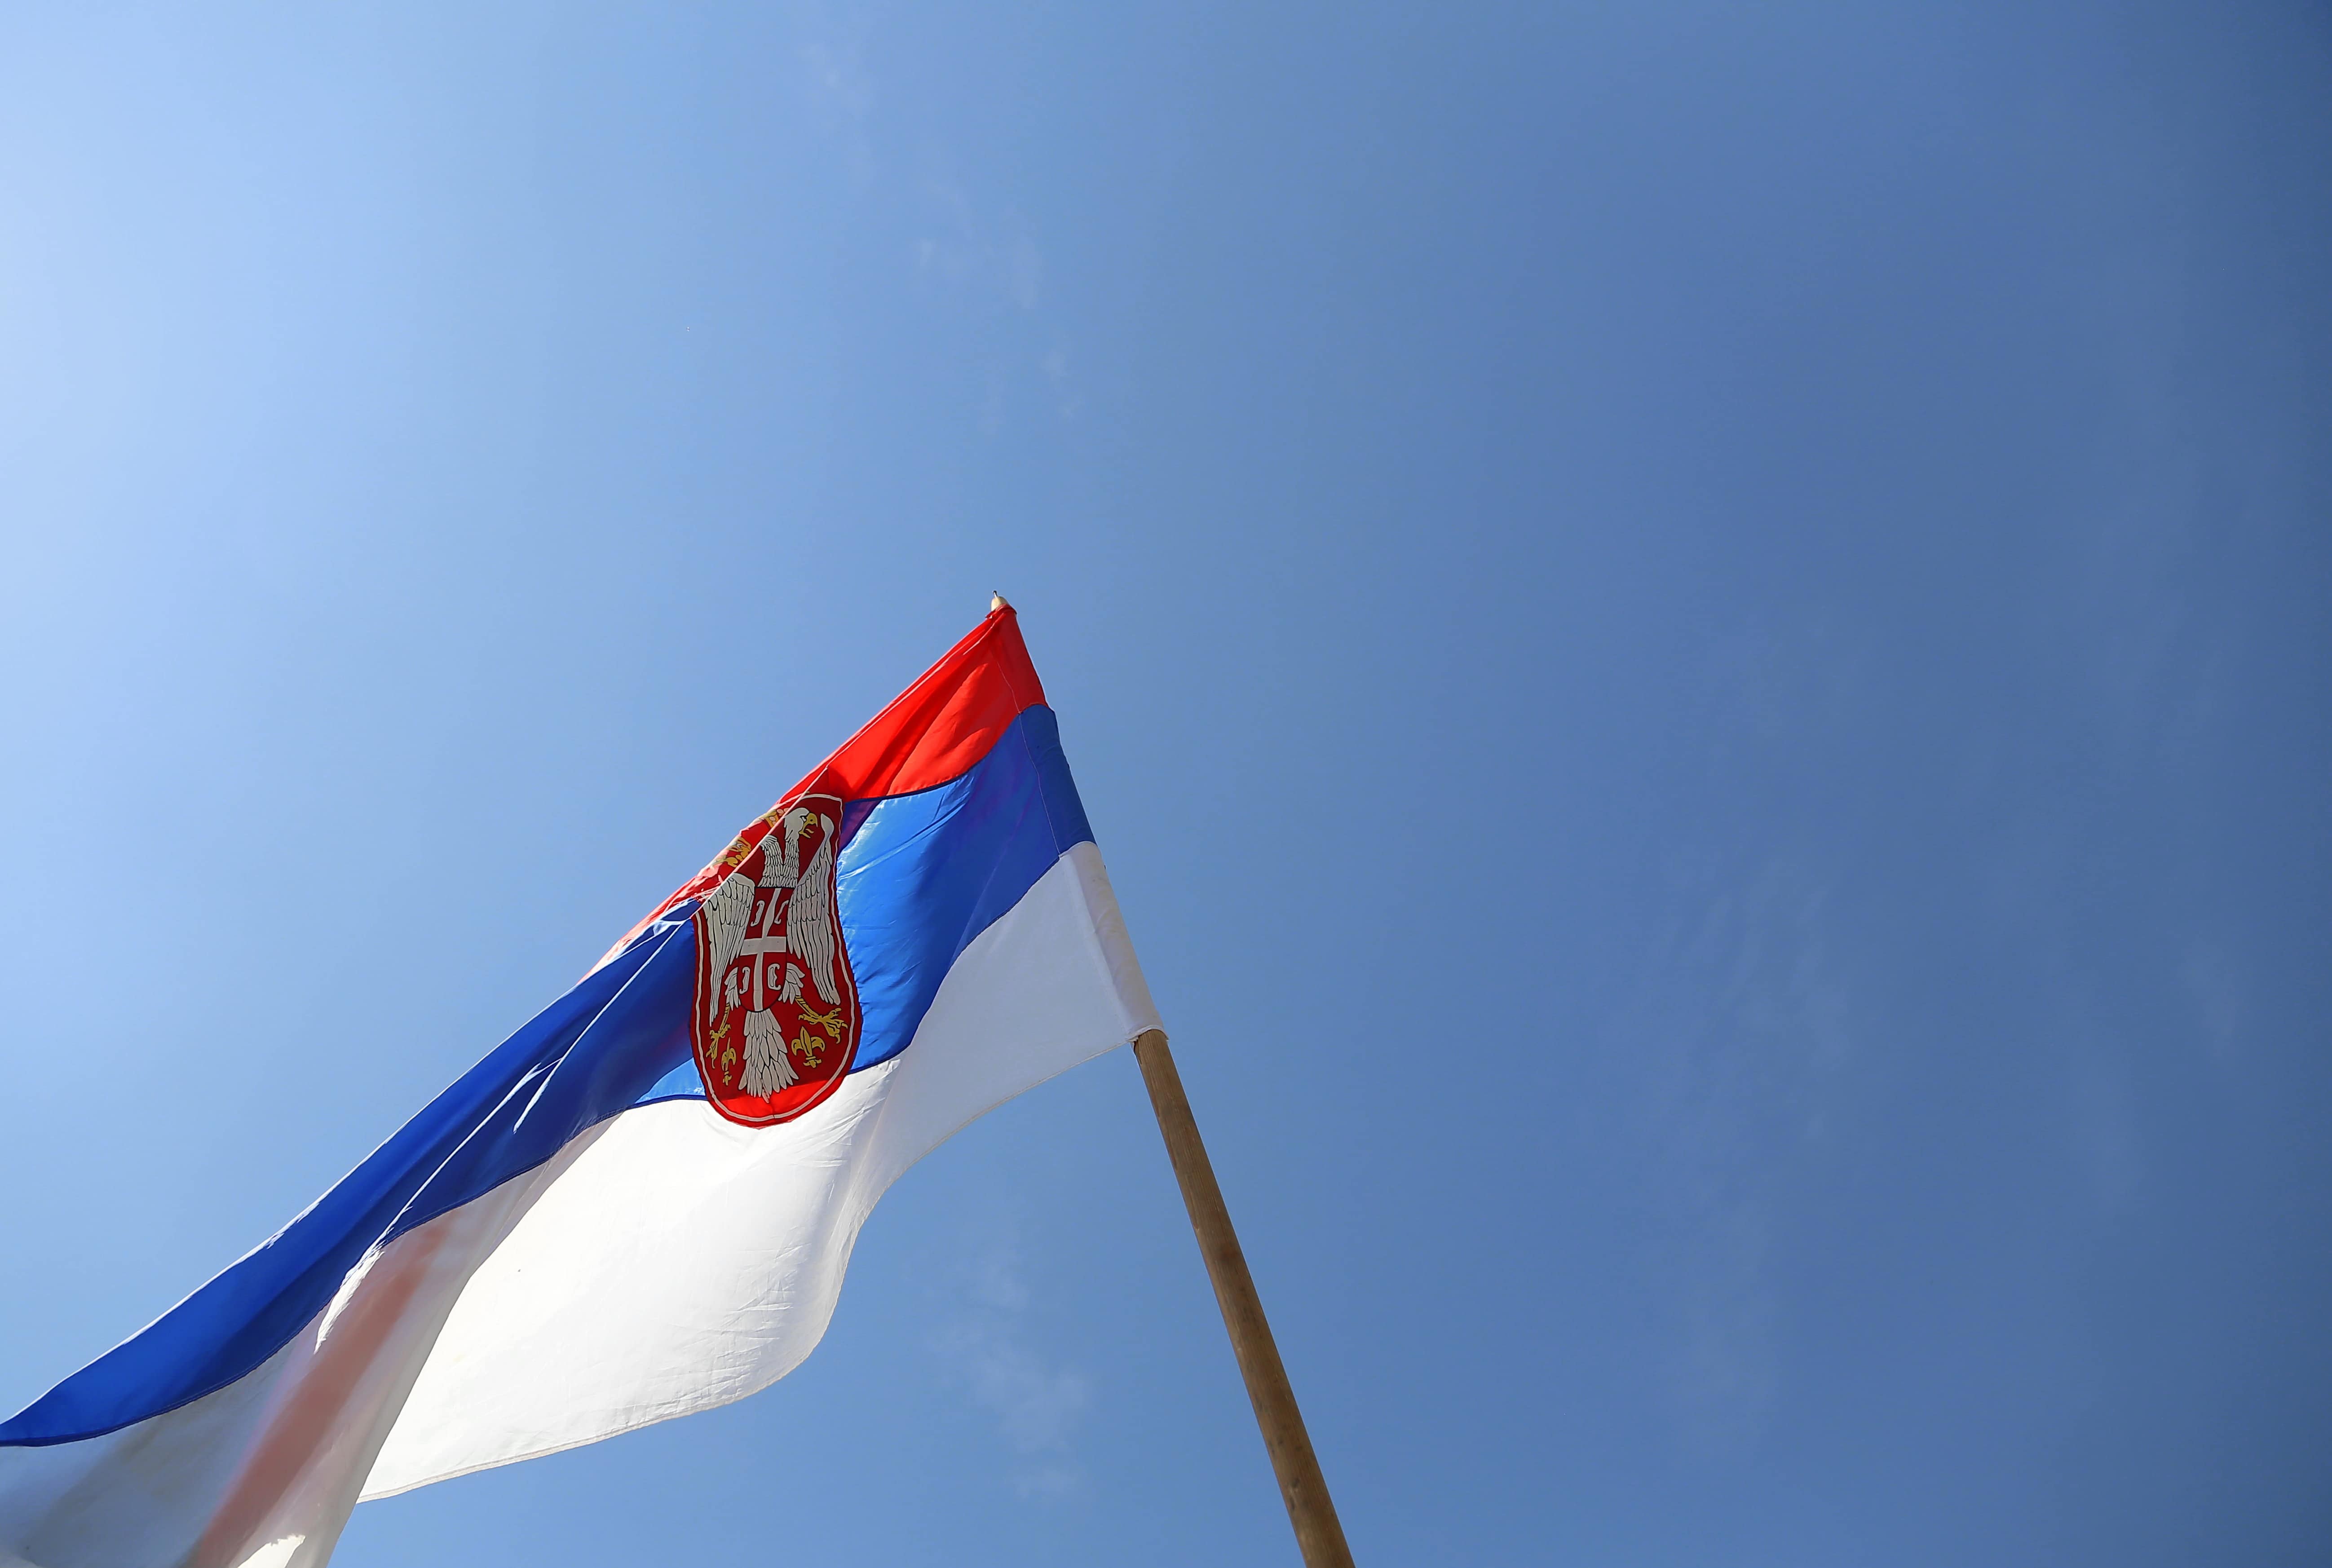 Image libre: Serbie, drapeau, emblème, héraldique, symbole, ciel bleu,  patrimoine, tricolor, bâton, vent